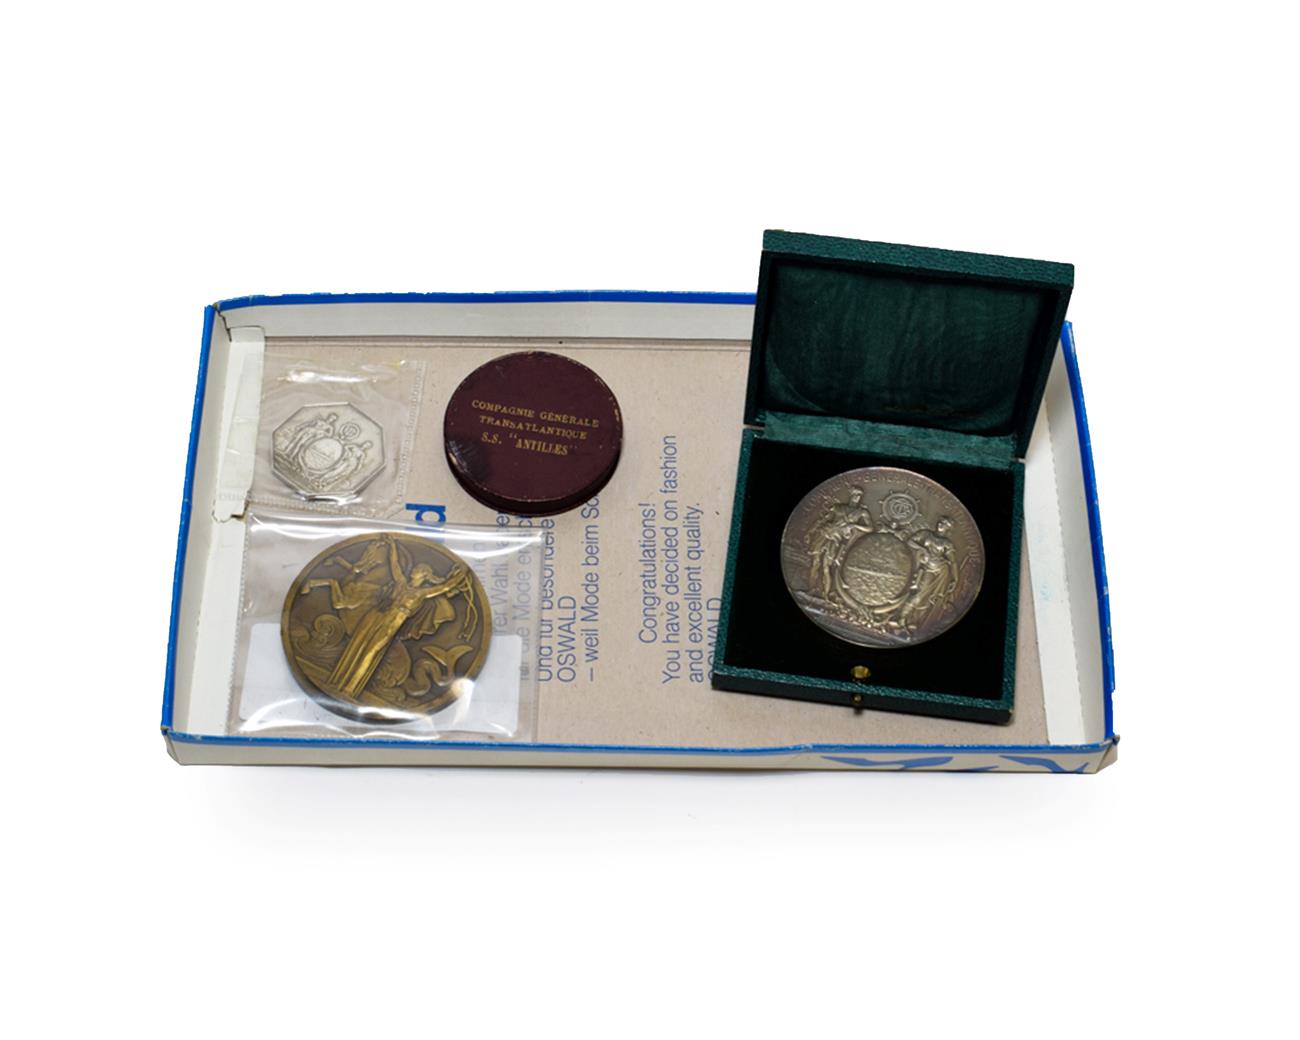 Lot 3061 - Compagnie Generale Transatlantique Commemorative Medallions (i) Le Conseil D'Administration a M...